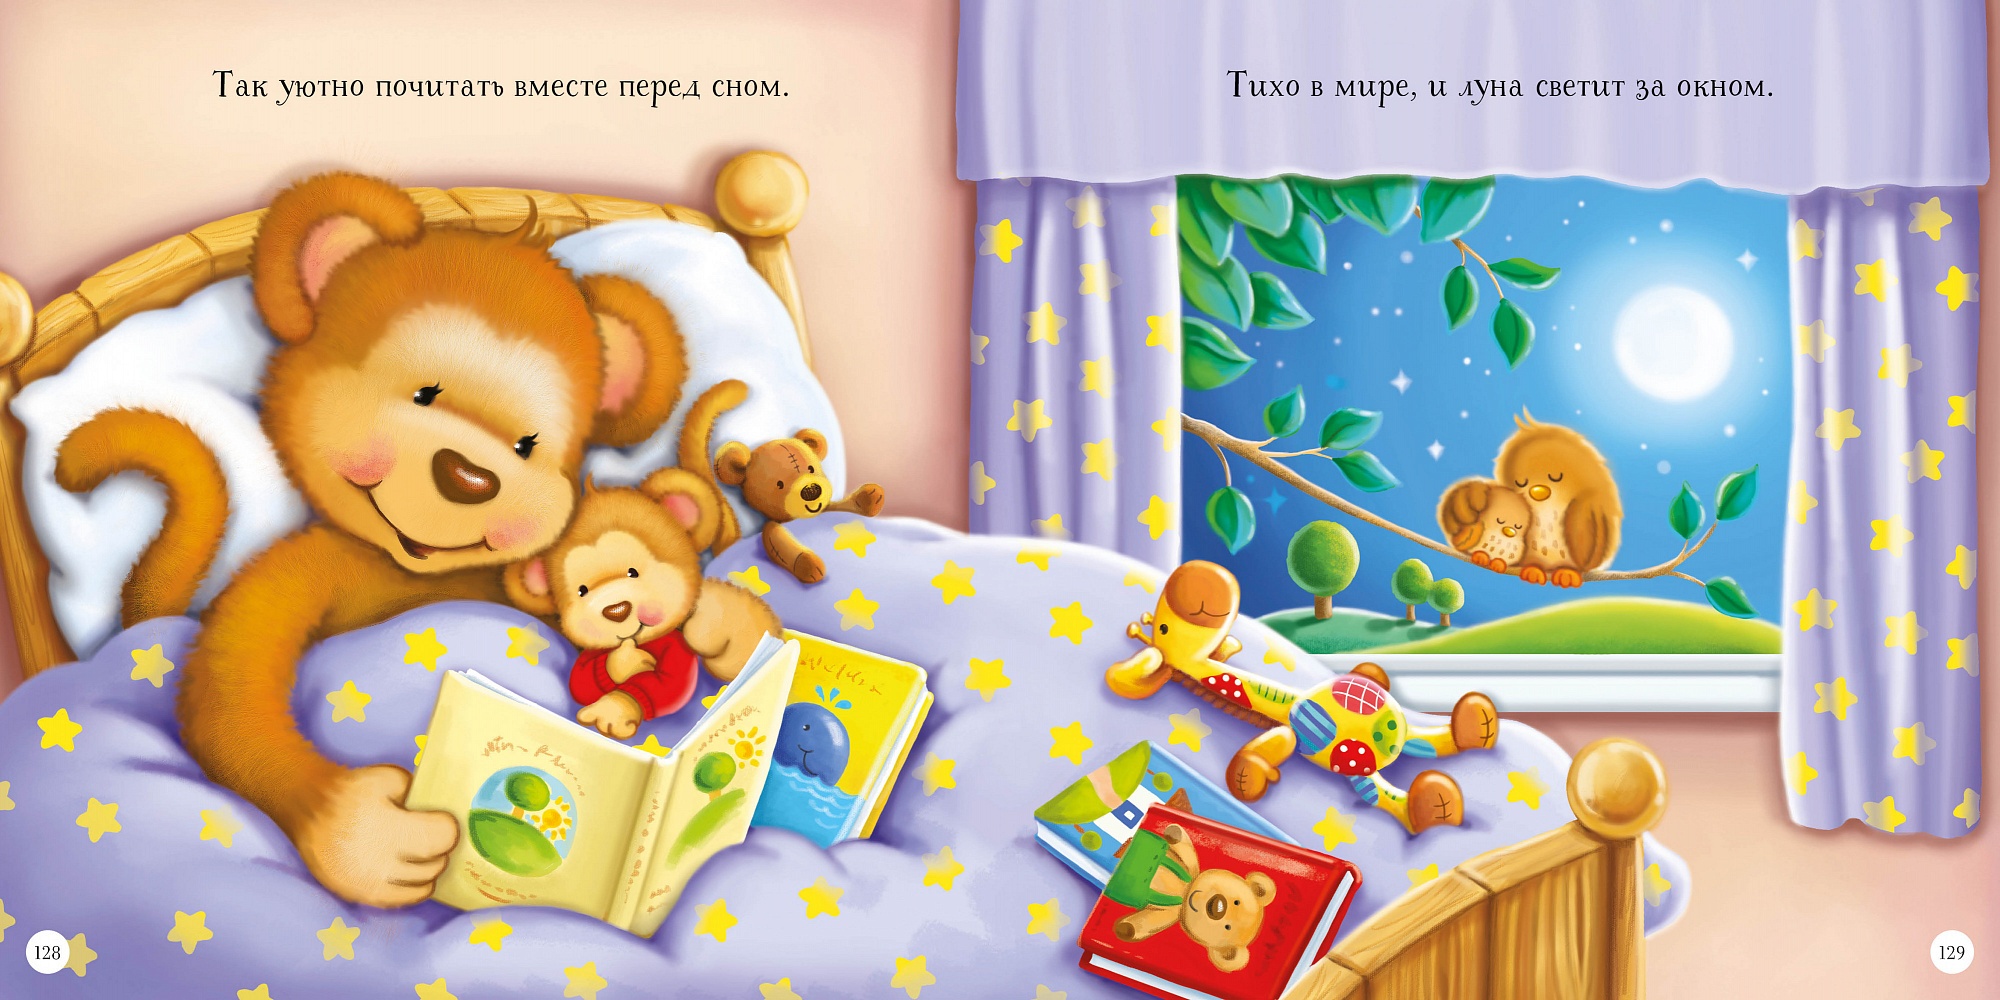 Сказки на ночь малышам. Детская книга я люблю тебя малыш. Книга подарок тебе малыш. Читать сказки для детей 3-4 перед сном с картинками короткие.